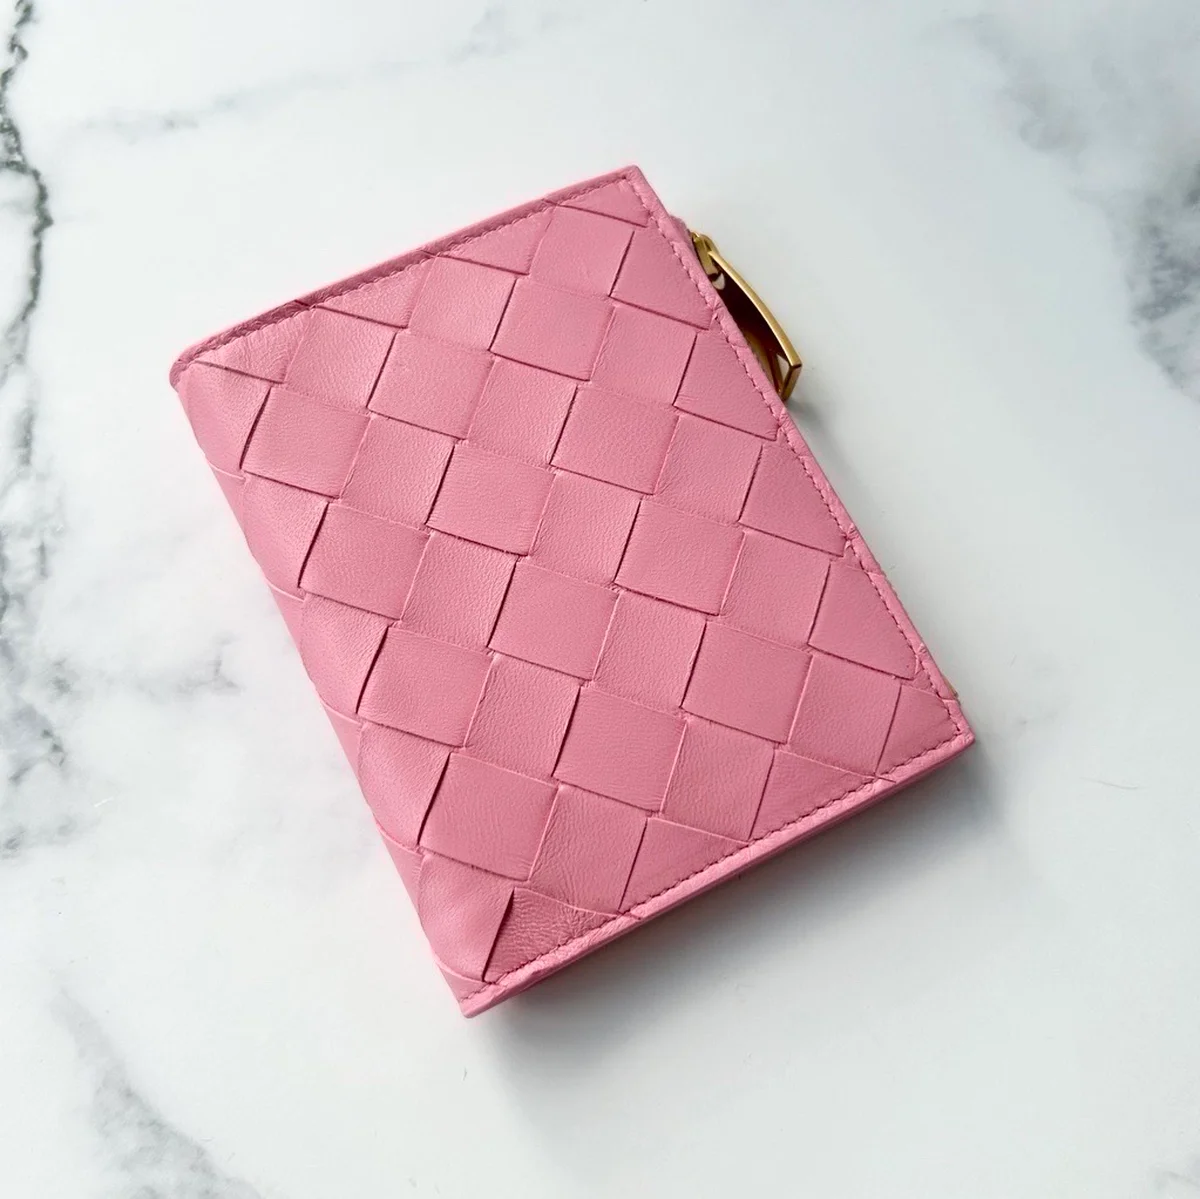 ボッテガ・ヴェネタのピンク色の財布の写真